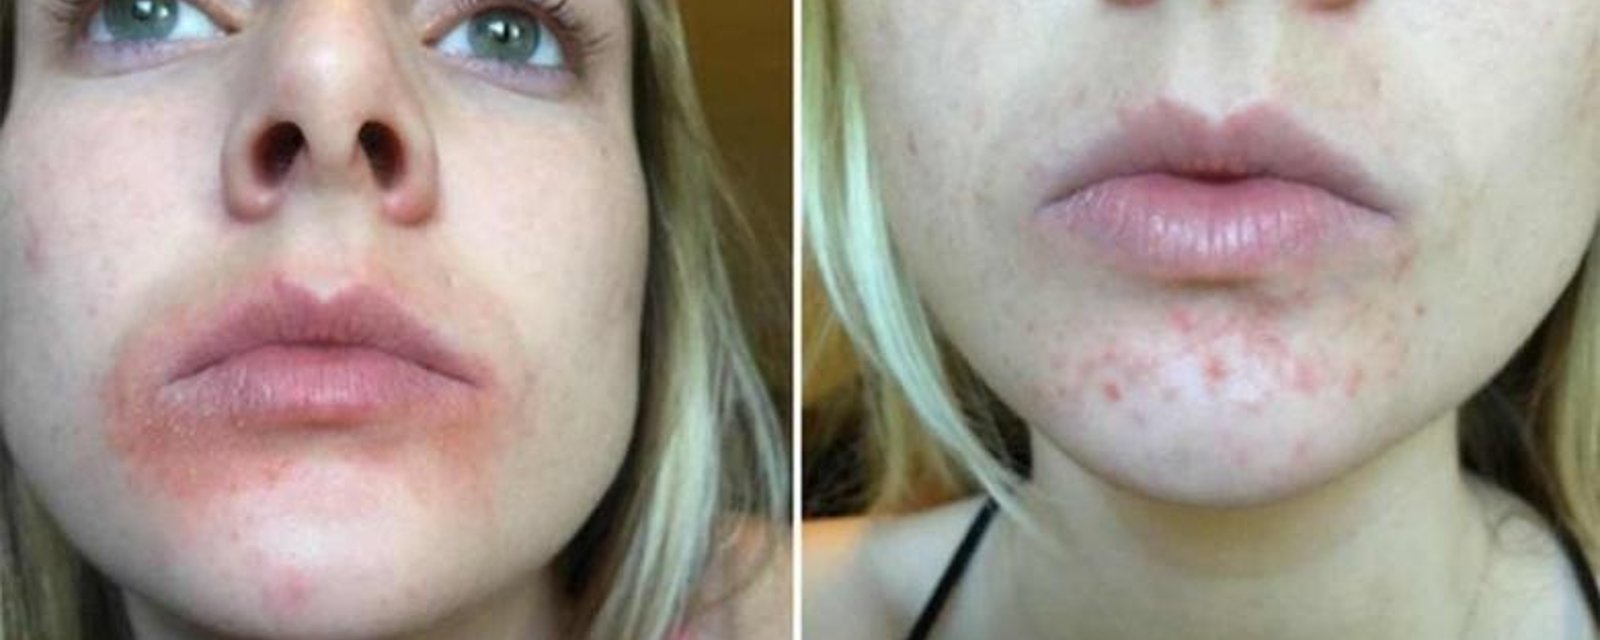 Une nouvelle marque de baume à lèvres cause de sérieux problèmes à plusieurs femmes